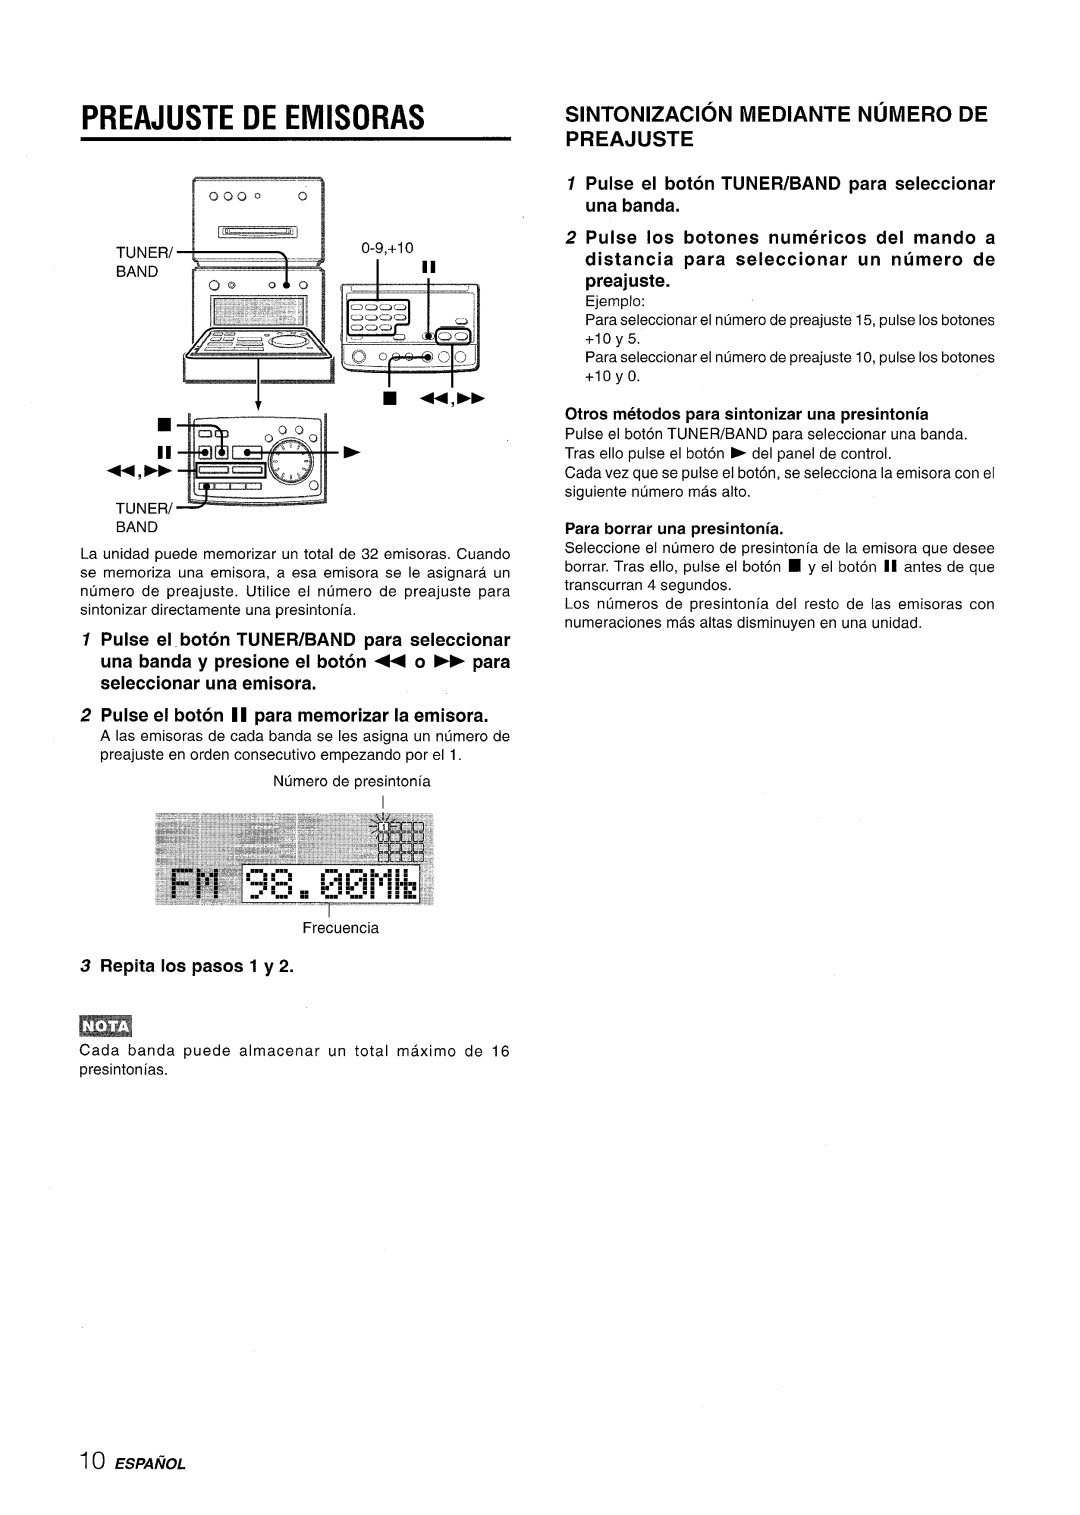 Aiwa XR-MD95 manual Preajuste De Emisoras, Sintonizacion Mediante Numero De Preajuste, Repita Ios pasos 1 y, Espanol 